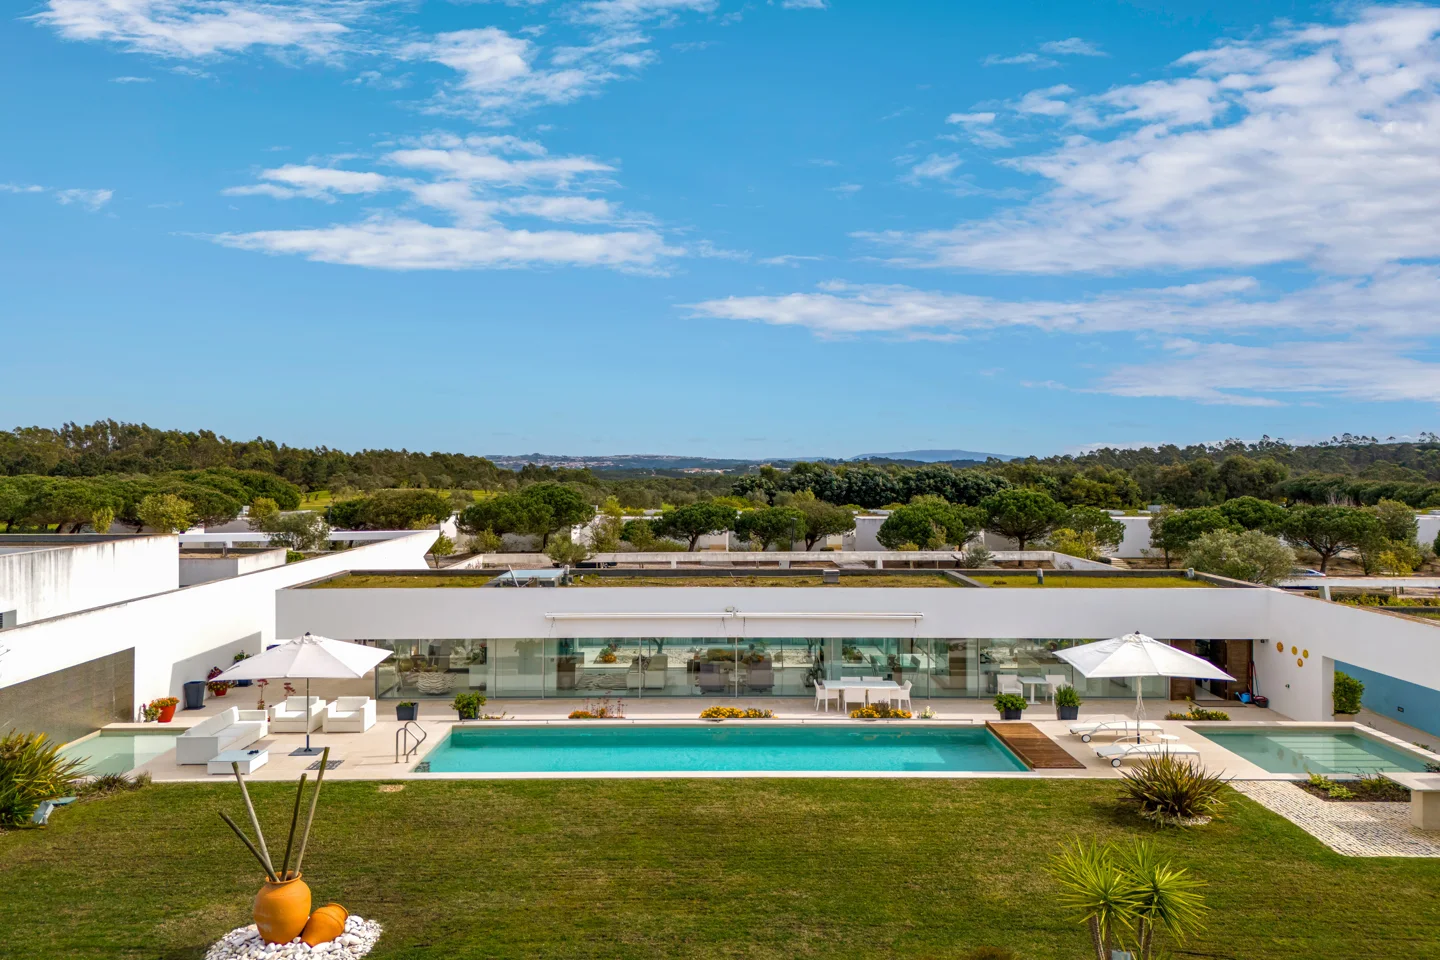 Nature's Design - Exceptional Contemporary Villa